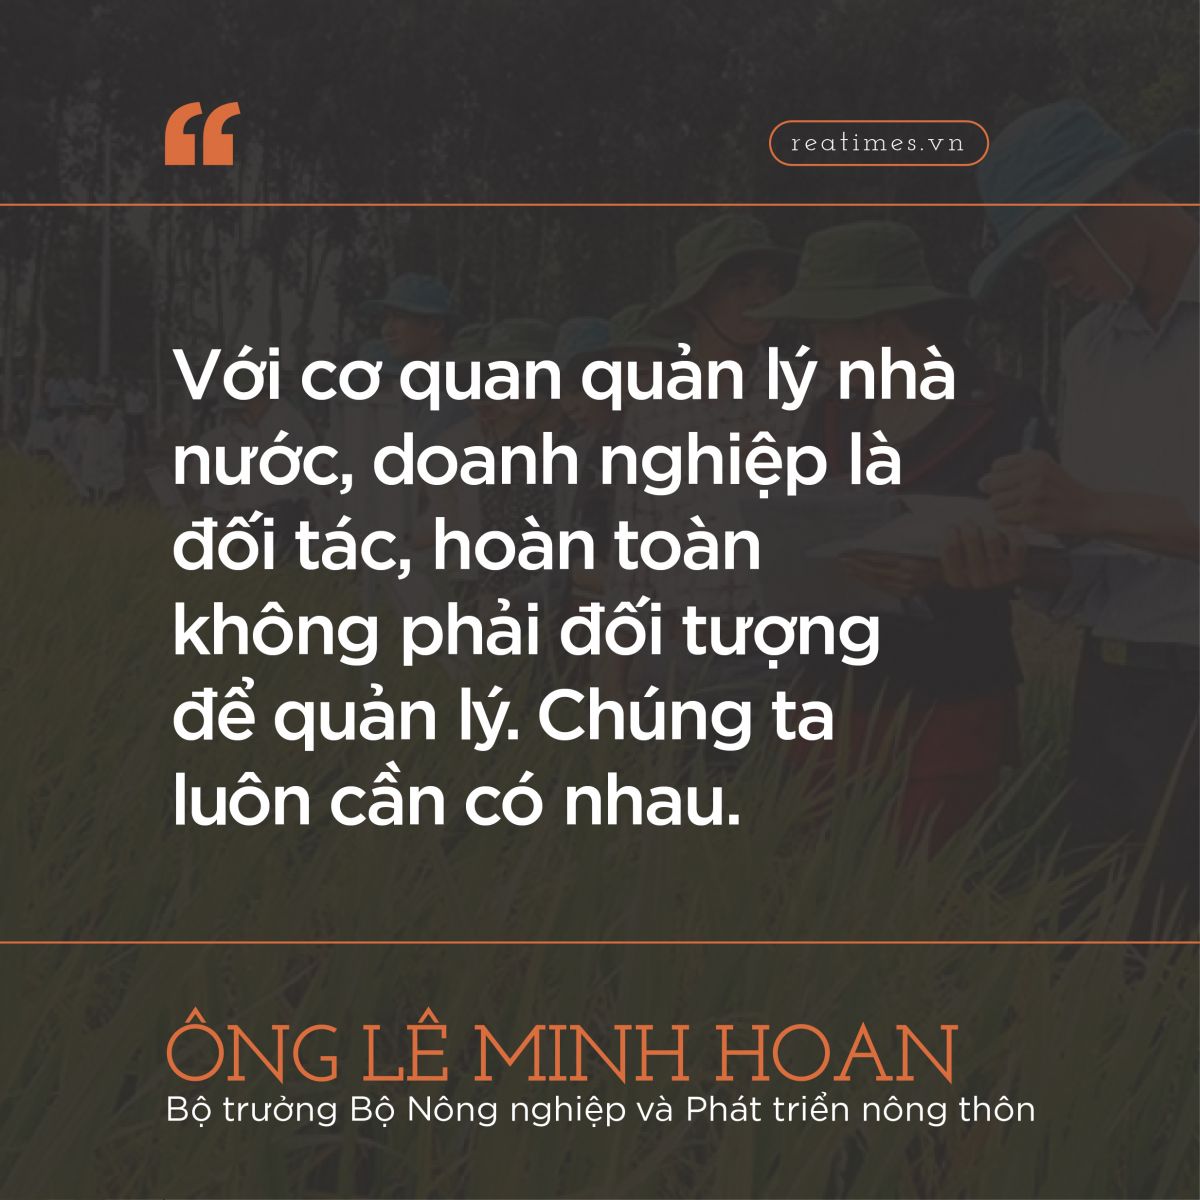 ông Lê Minh Hoan